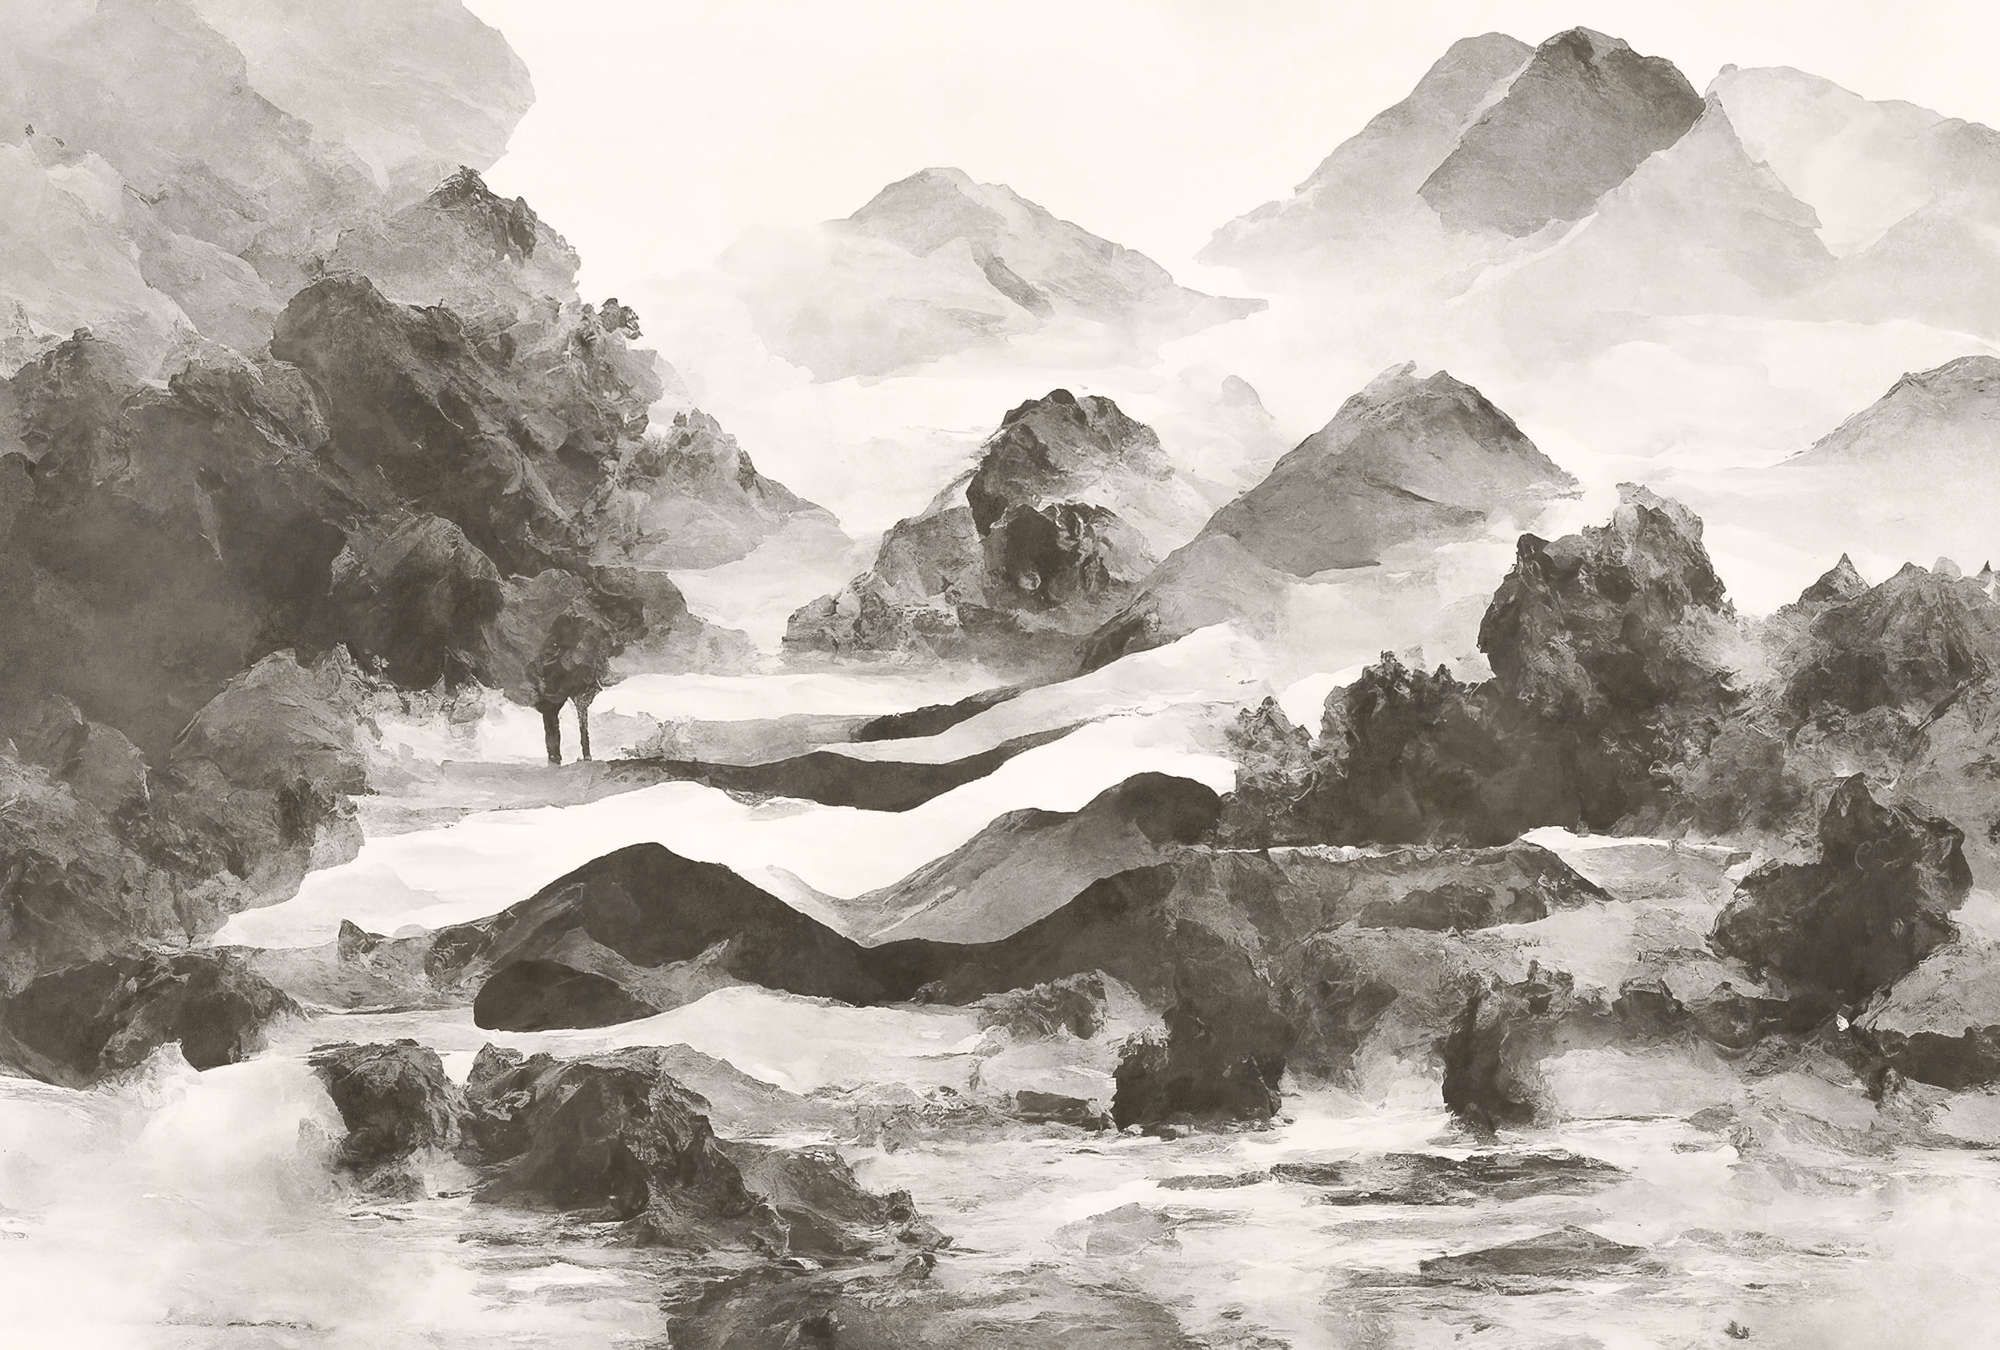             Digital behang »tinterra 1« - Landschap met bergen & mist - Grijs | Licht structuurvlies
        